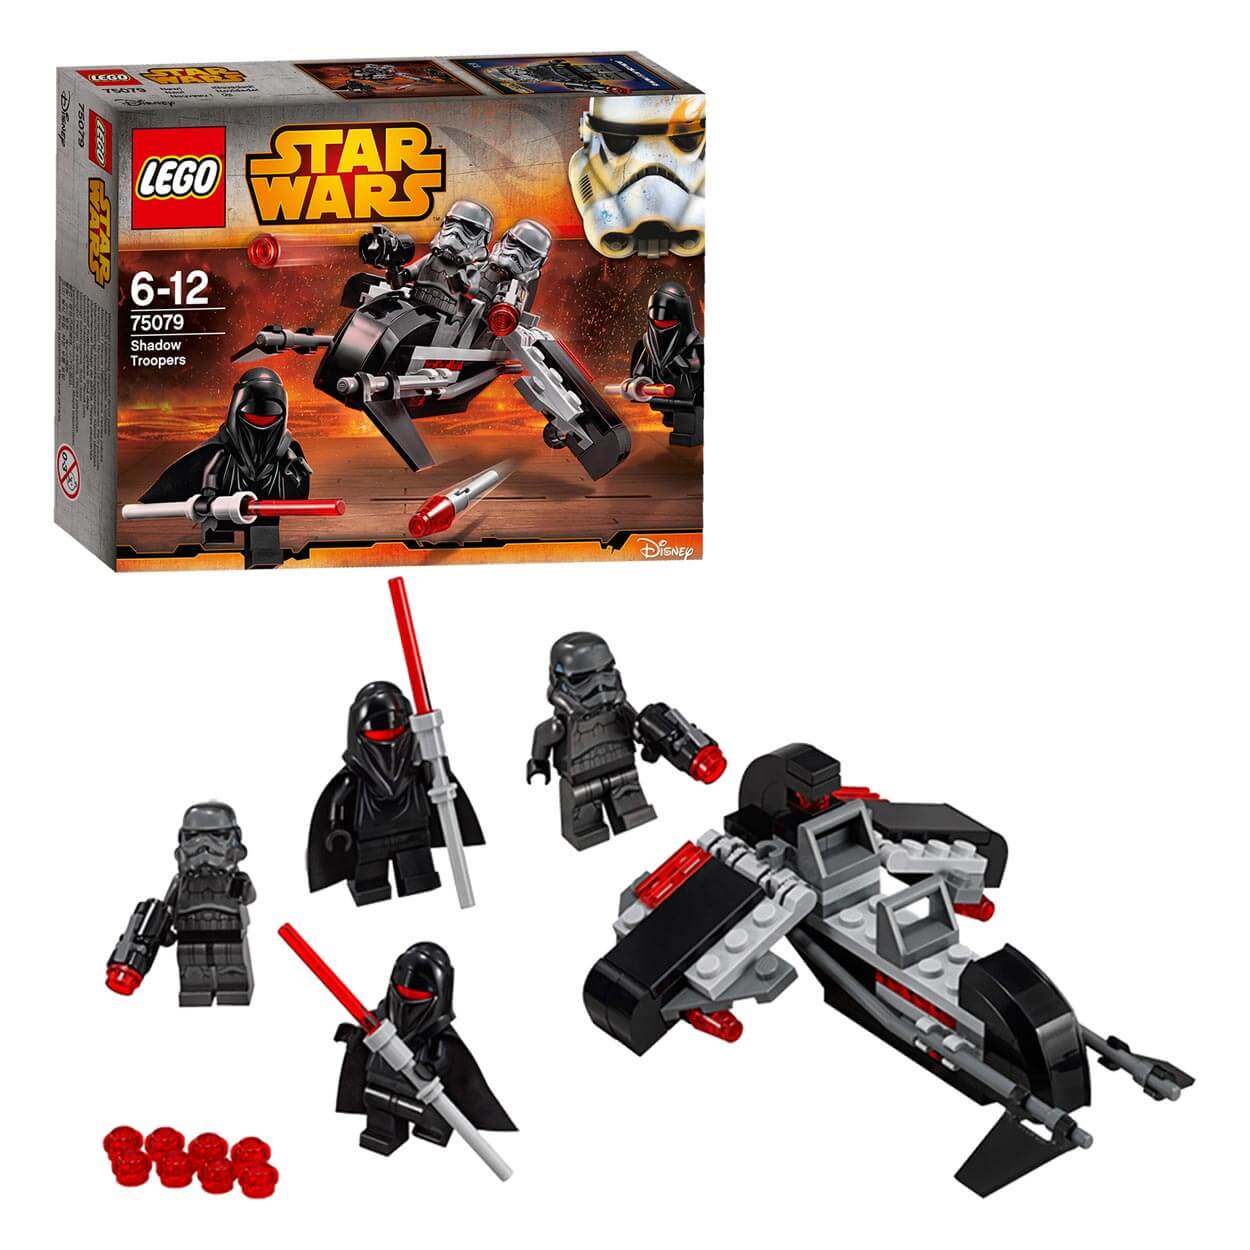  Set de constructie LEGO Star Wars Shadow Troopers 